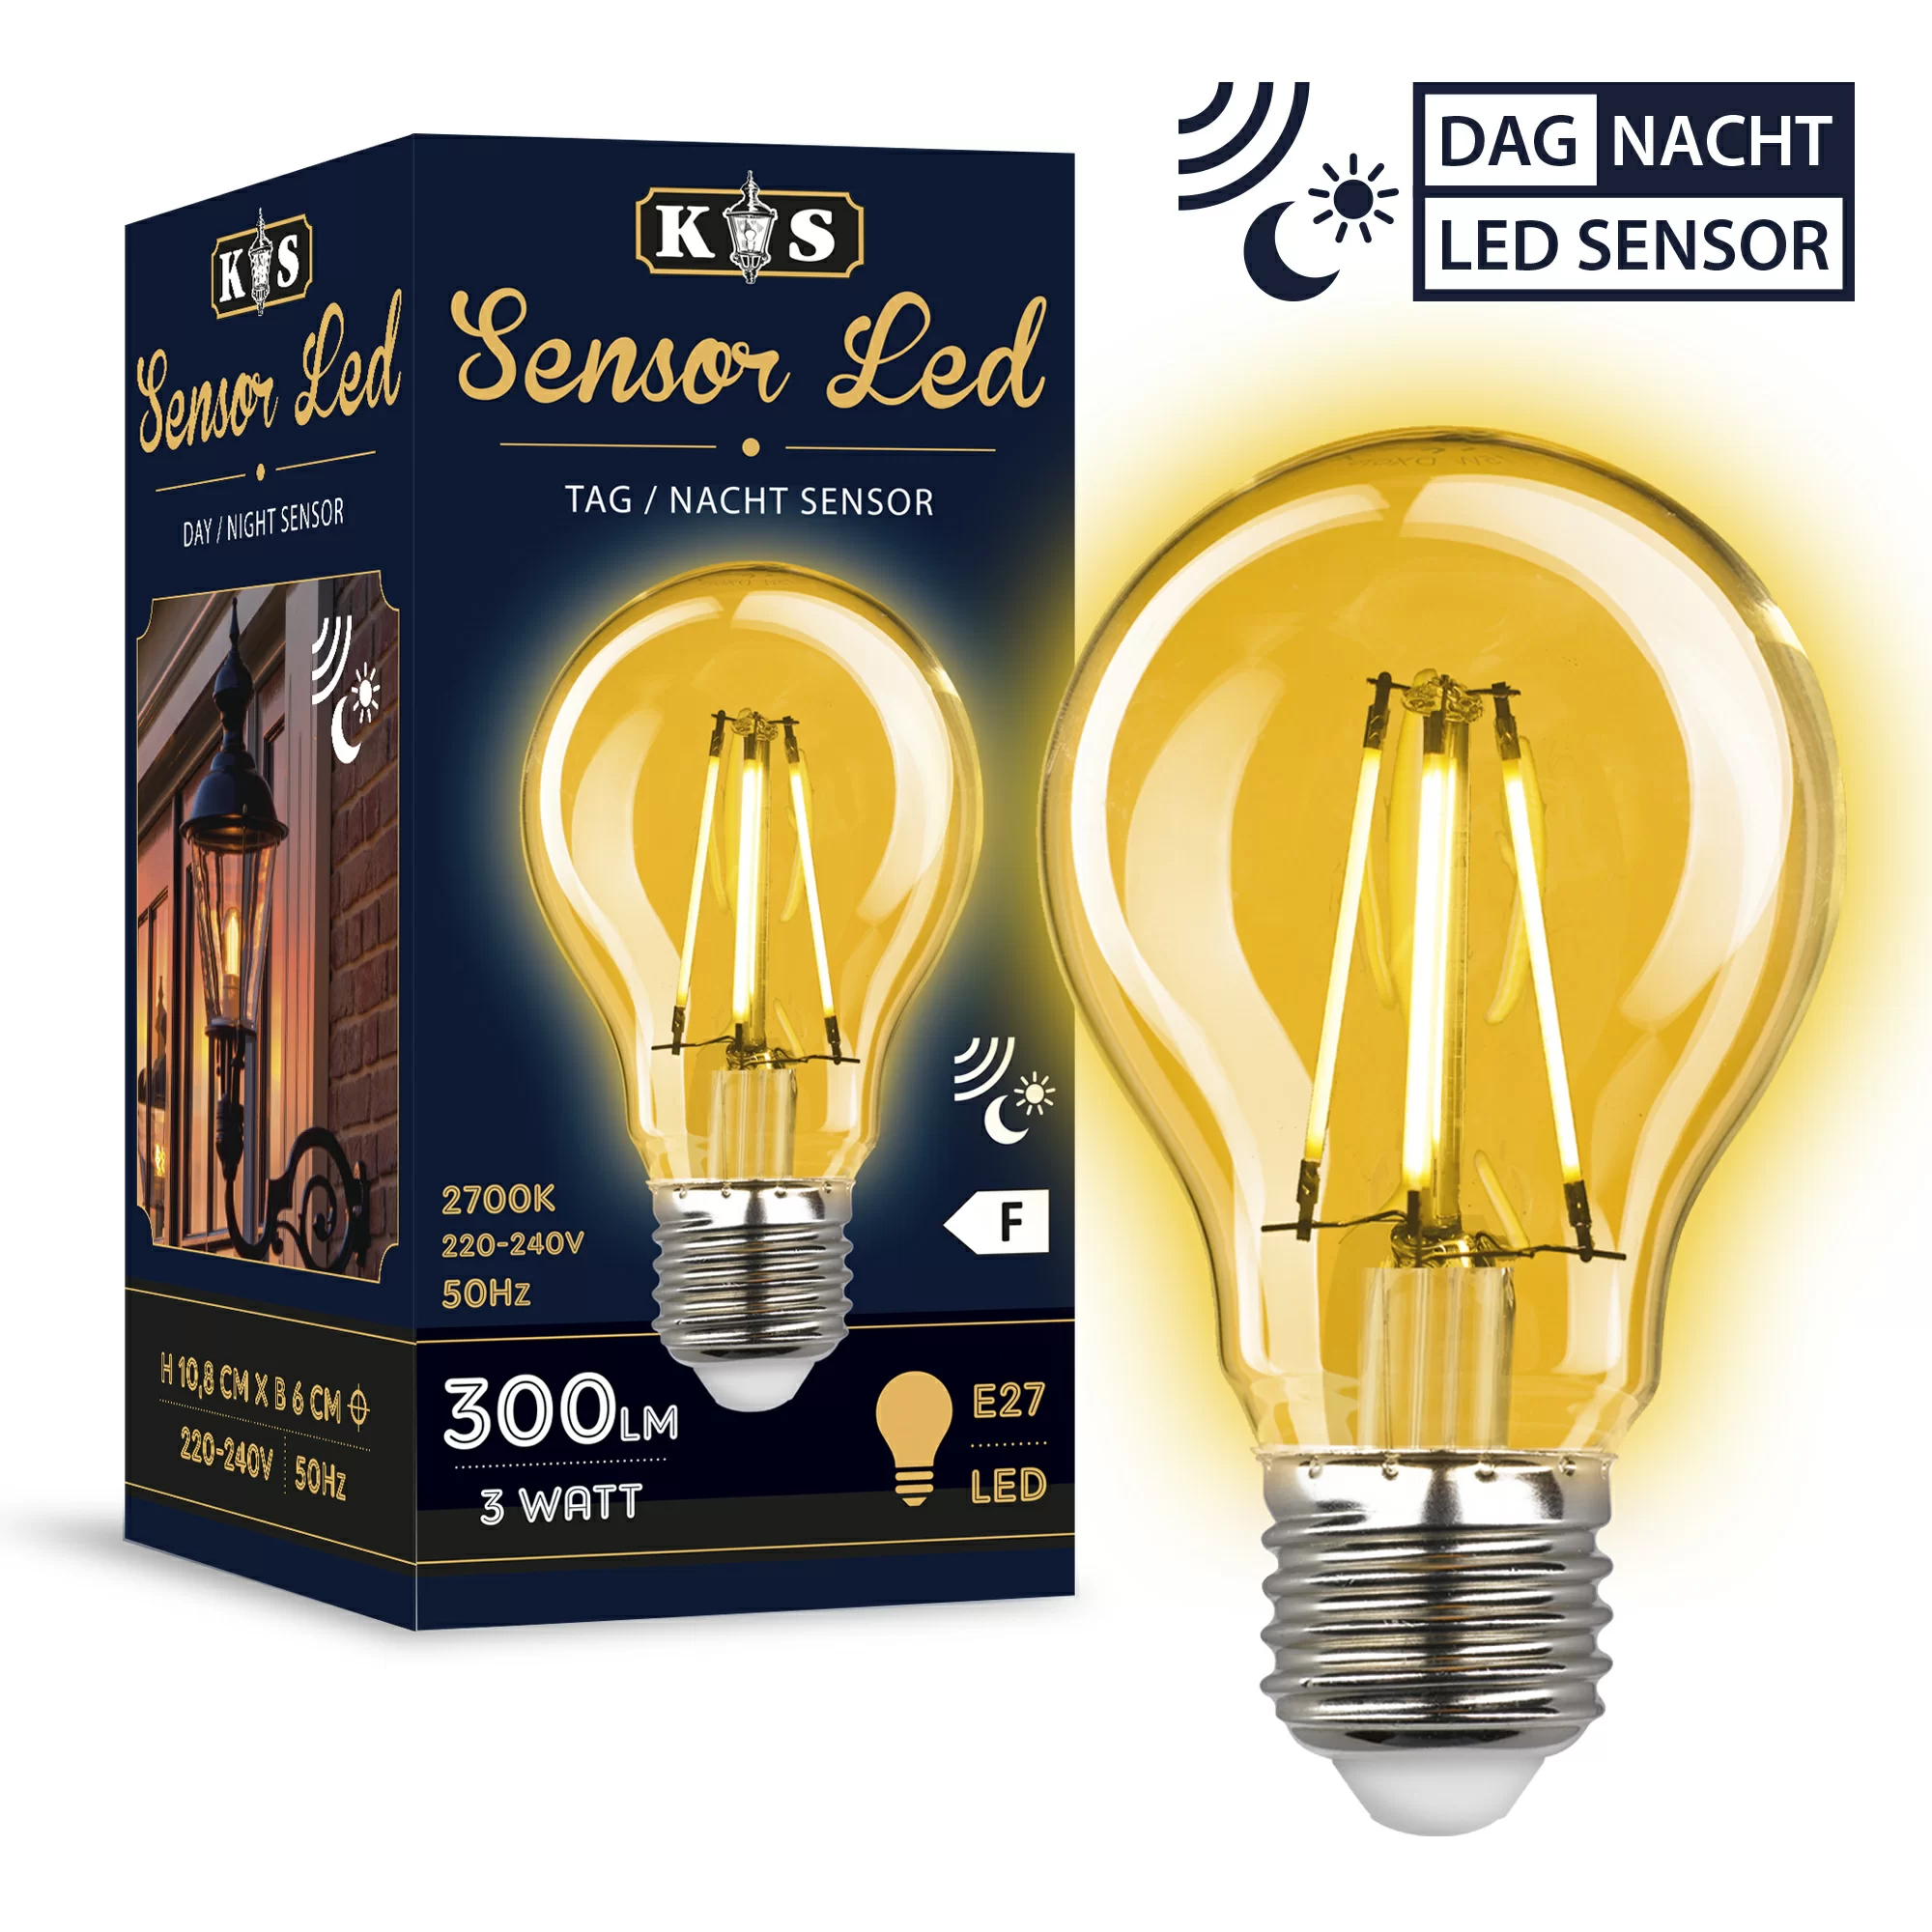 Beginner Bij wet Hoop van Sensor LED light source | Official site KS outdoor lighting company